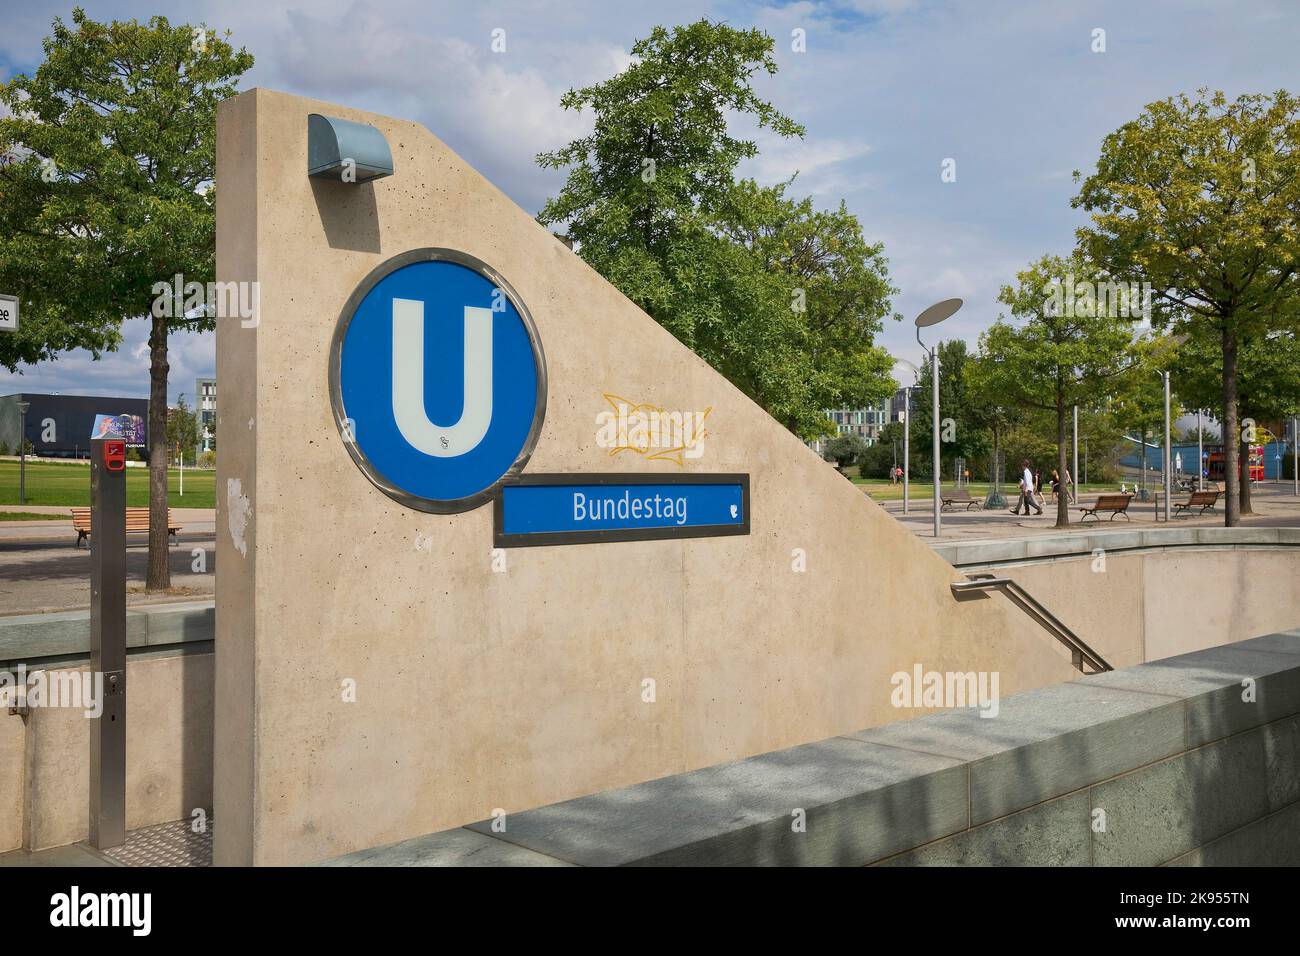 Entrée à la station de métro Bundestag, quartier du gouvernement, Berlin-Mitte, Allemagne, Berlin Banque D'Images